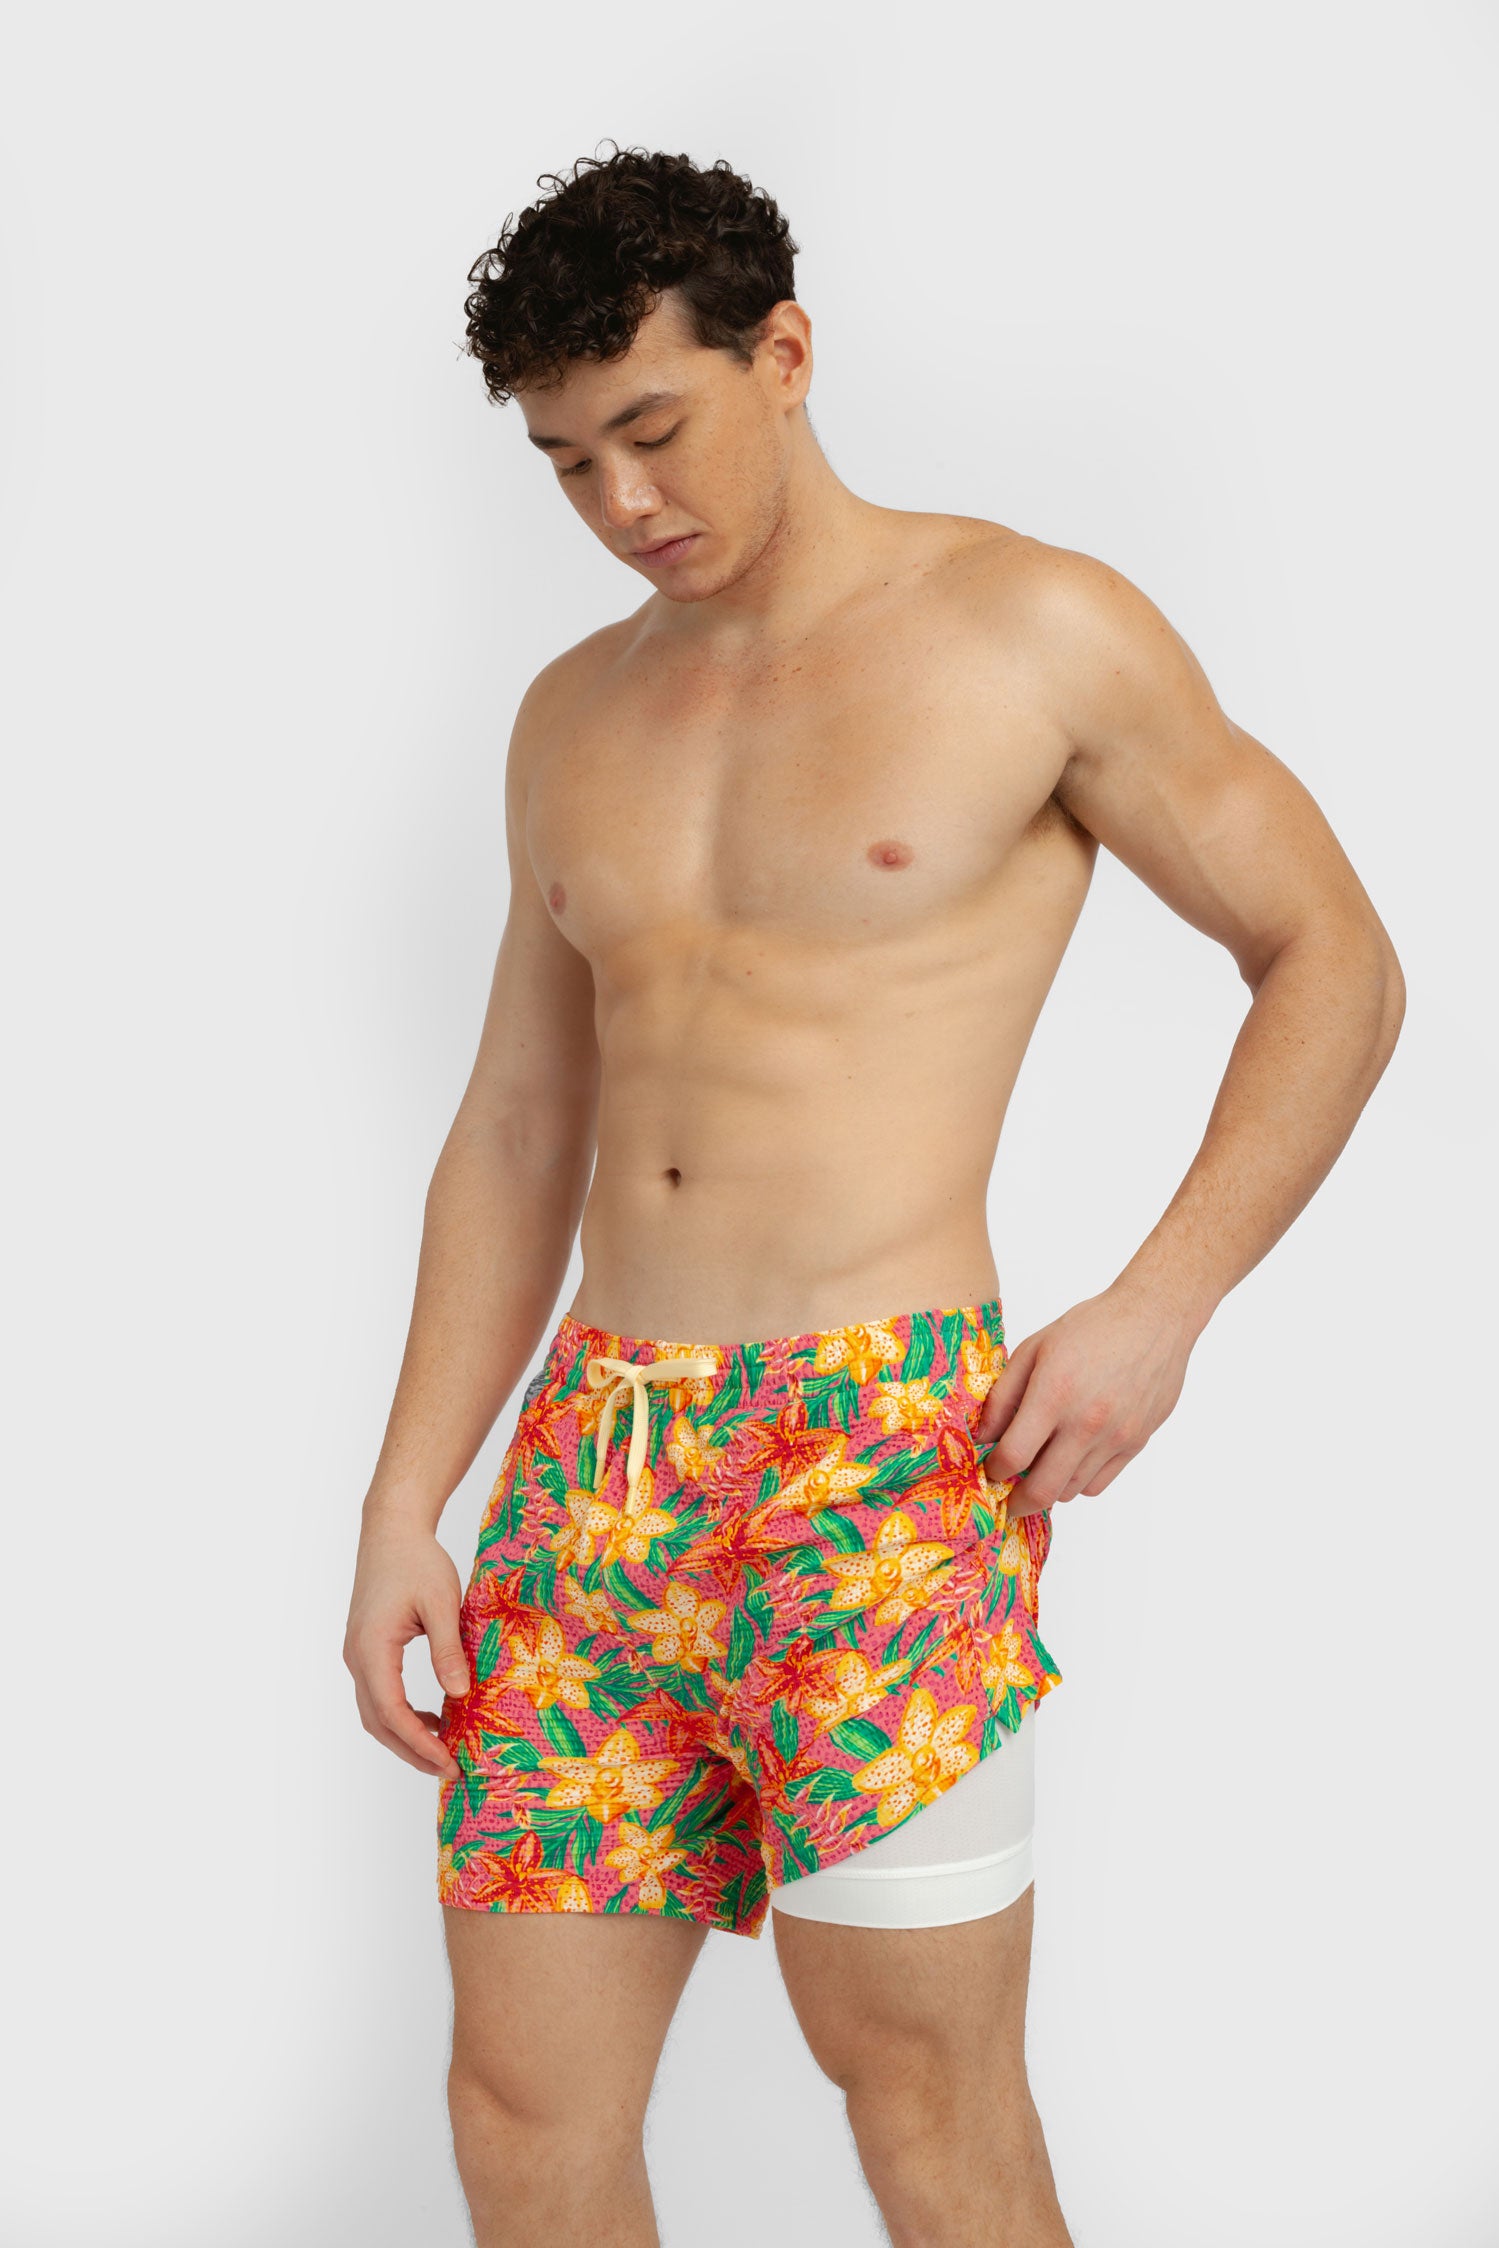 Men's Swim Shorts / Sunkissed